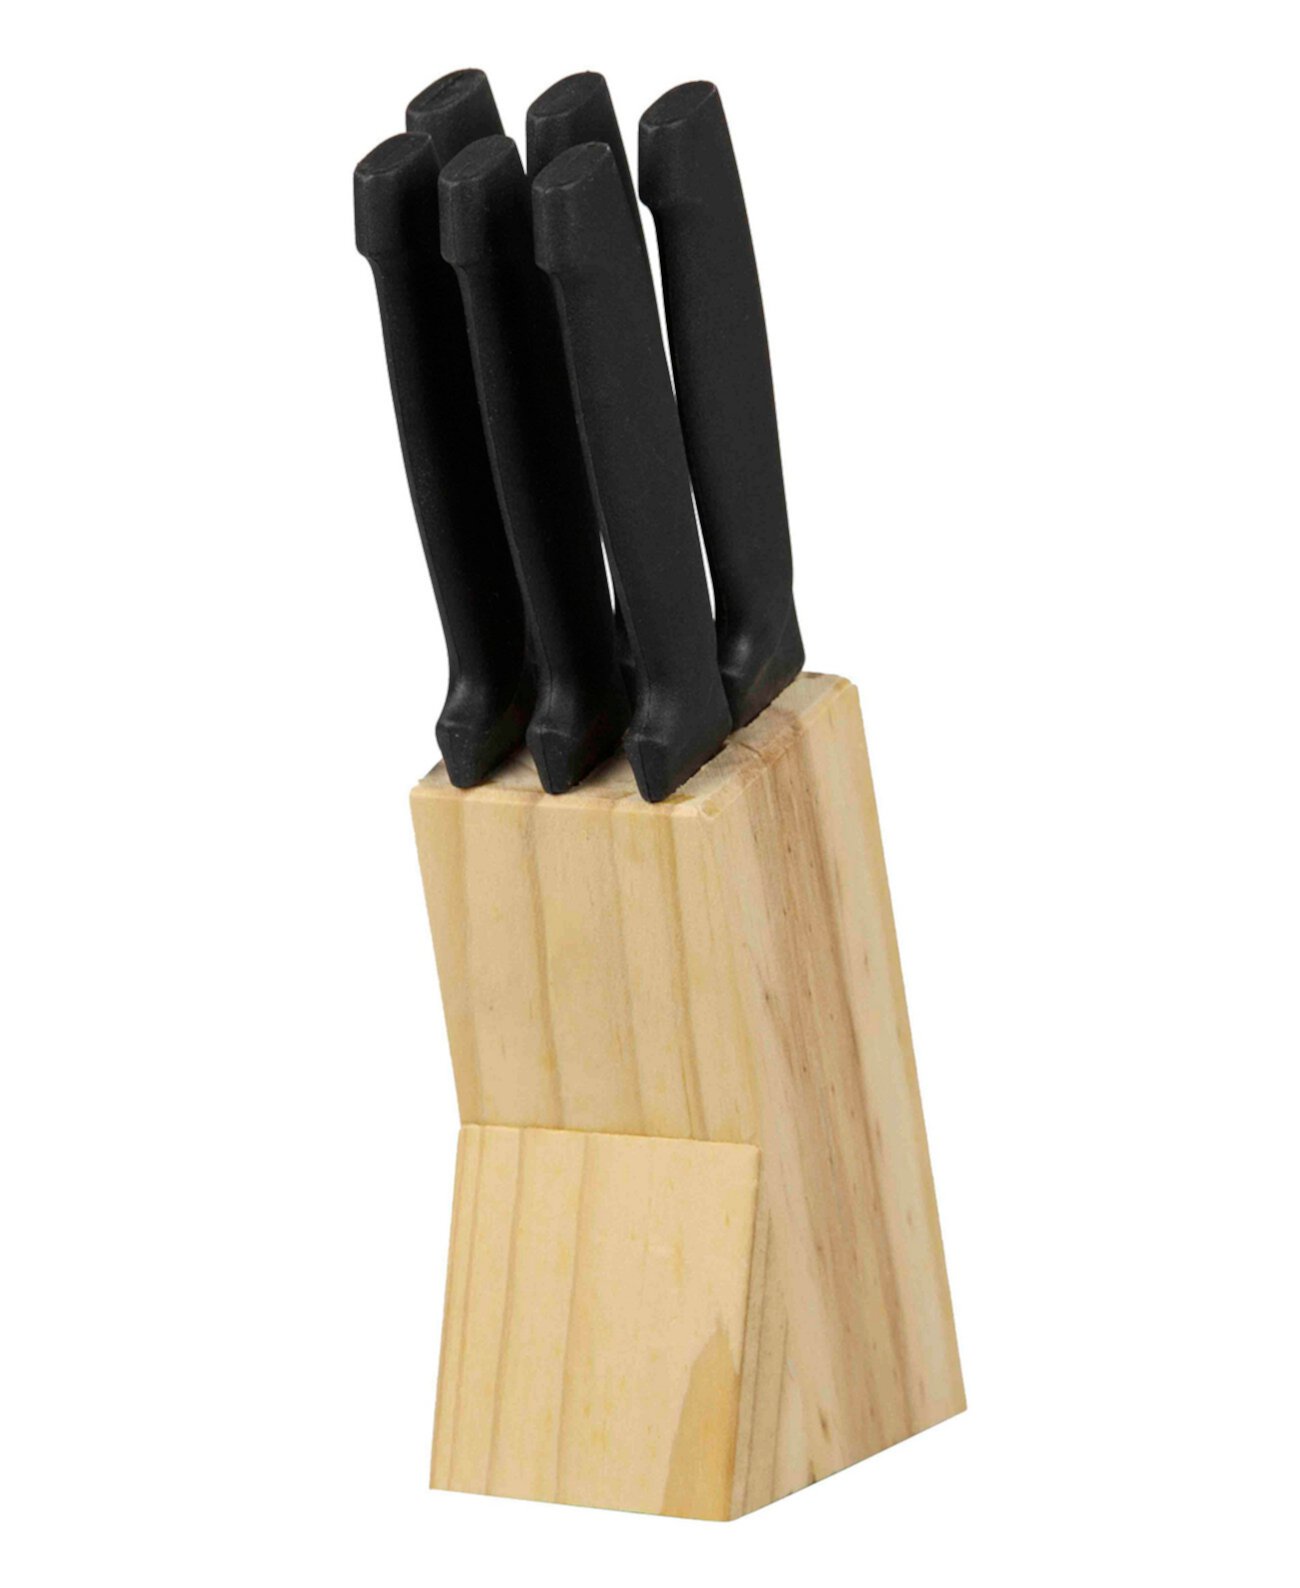 Нержавеющая сталь 6 шт. Набор ножей для стейка с демонстрационным блоком из натурального дерева HOME BASICS